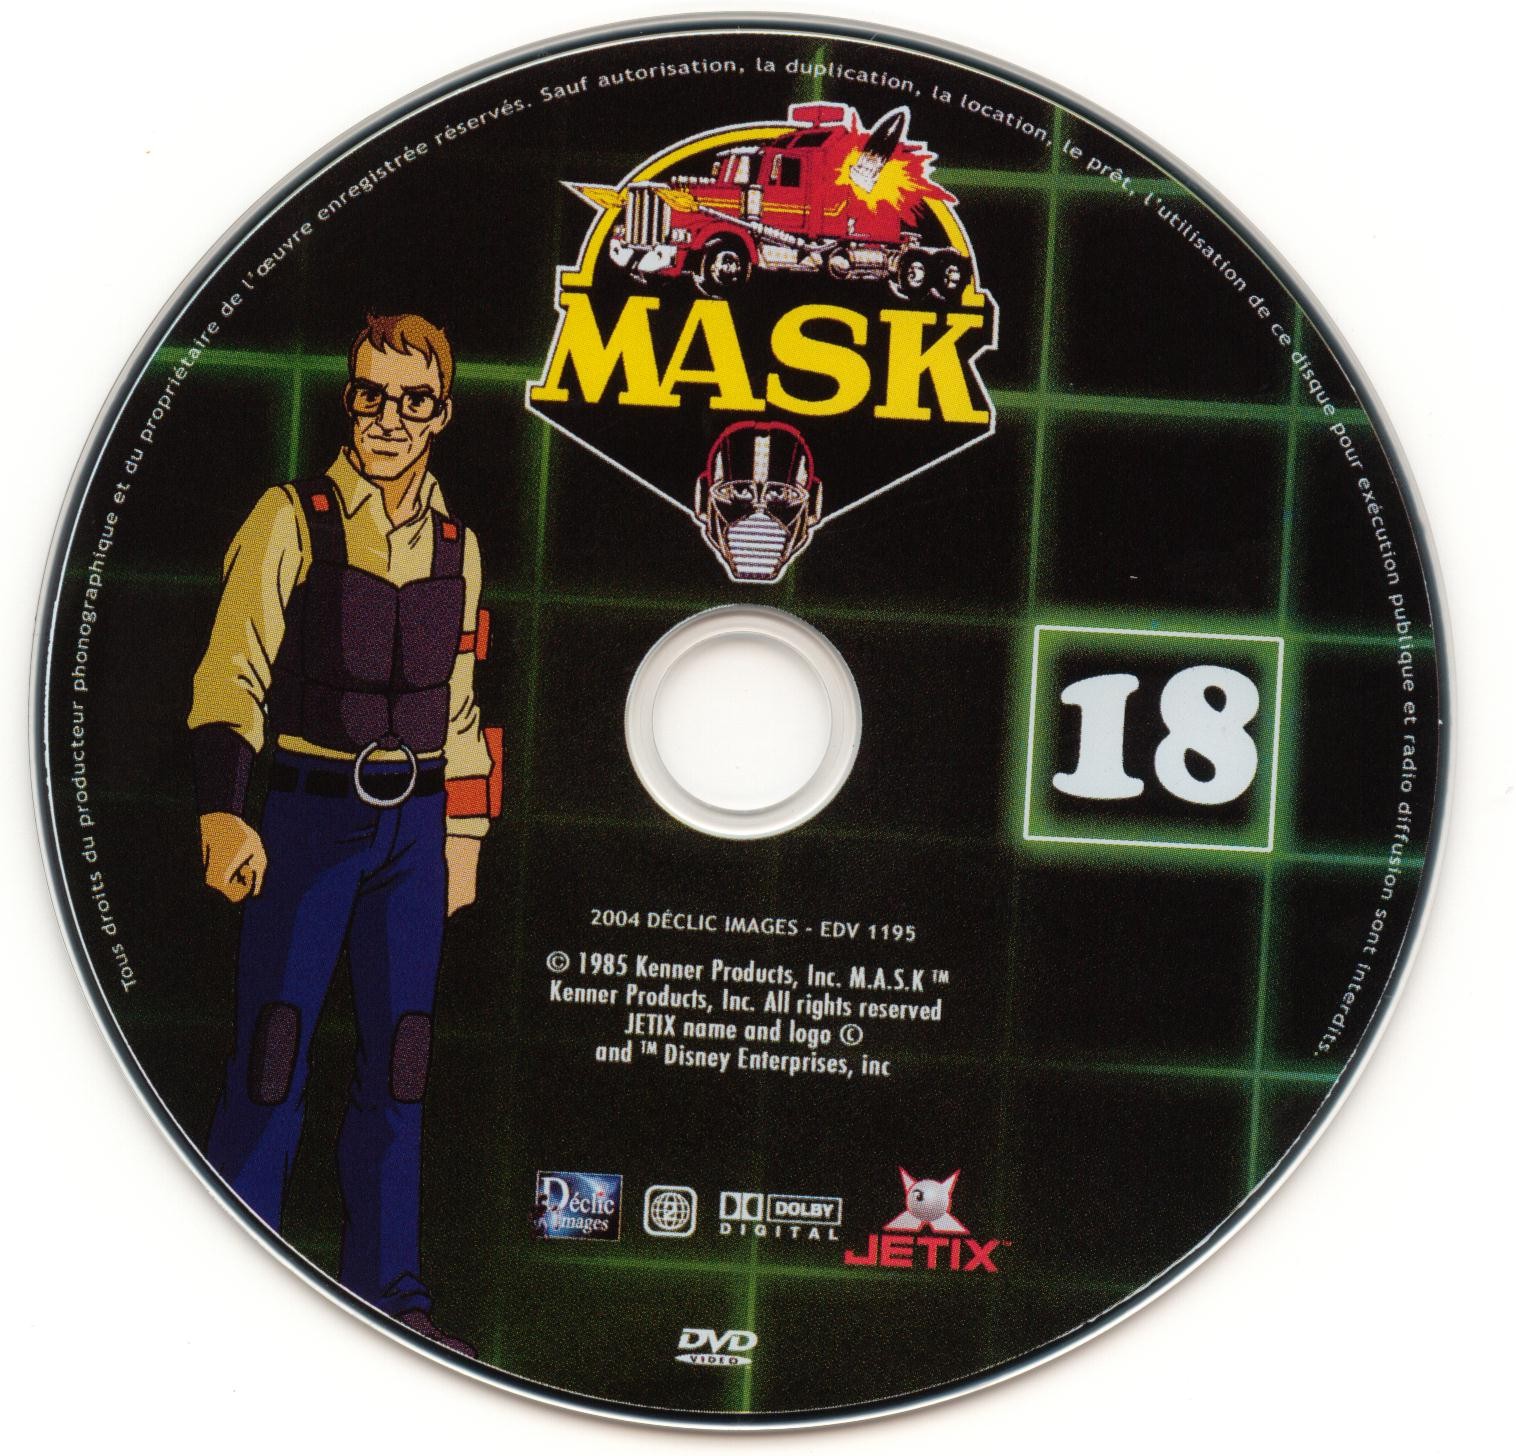 Mask vol 18